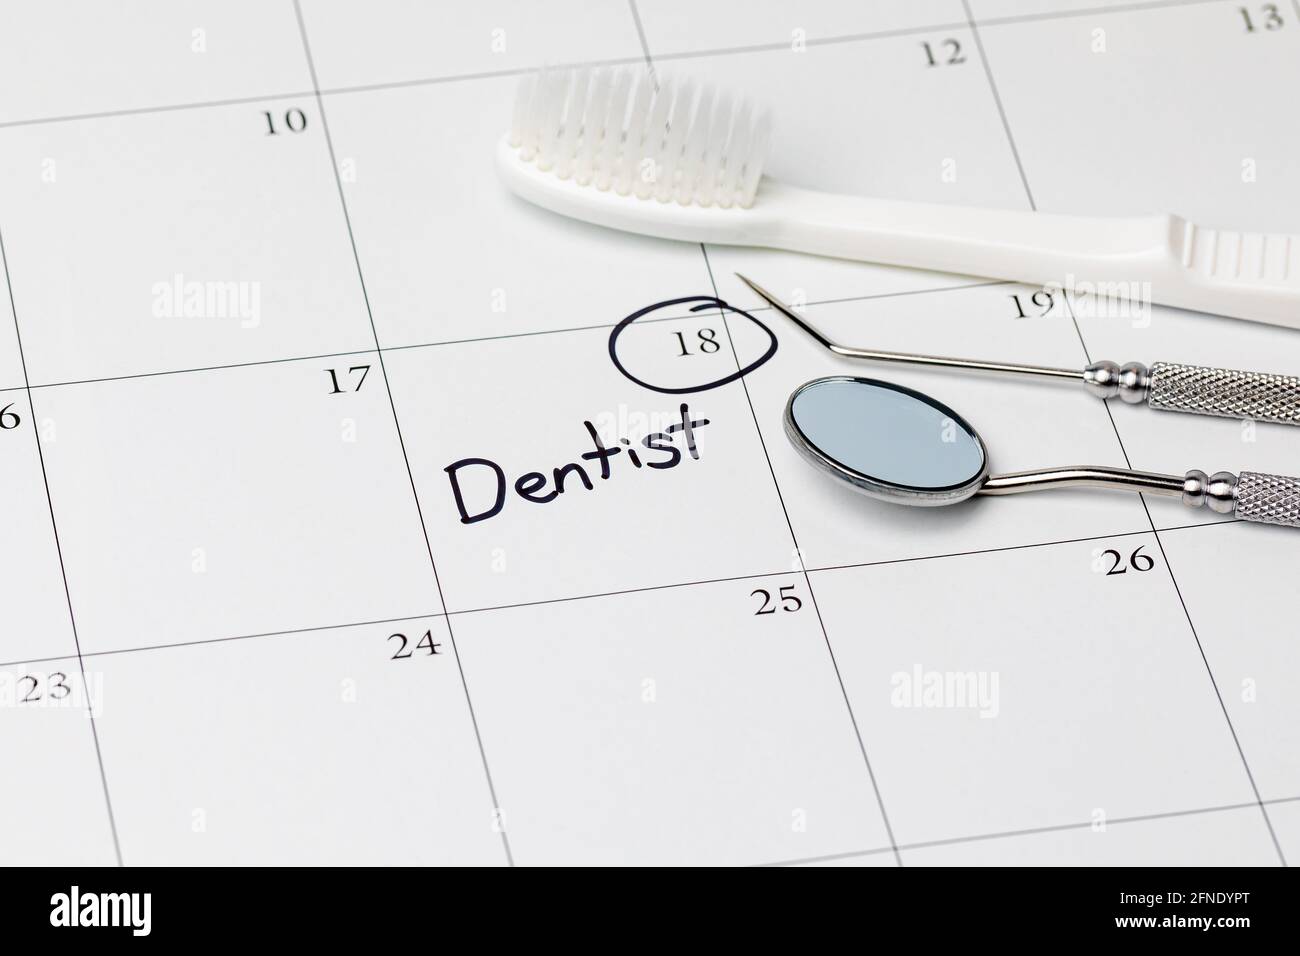 Recordatorio de cita del dentista en el calendario con cepillo de dientes y herramientas dentales. Concepto de salud bucal, examen dental y limpieza de dientes Foto de stock